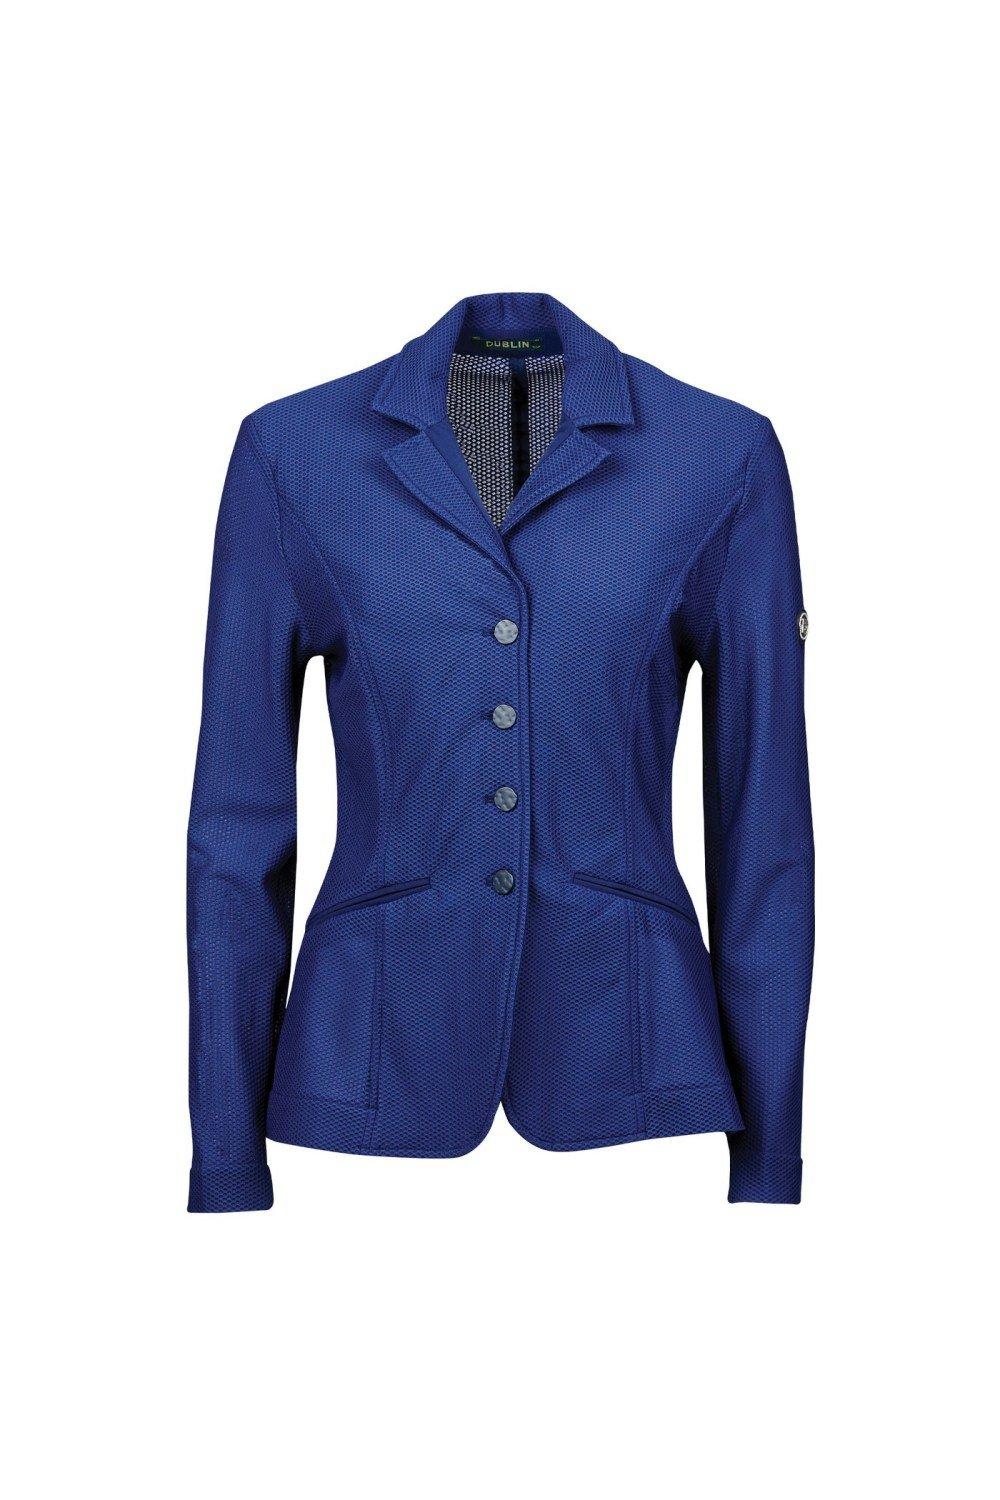 Сетчатая приталенная куртка Hanna II Dublin, темно-синий